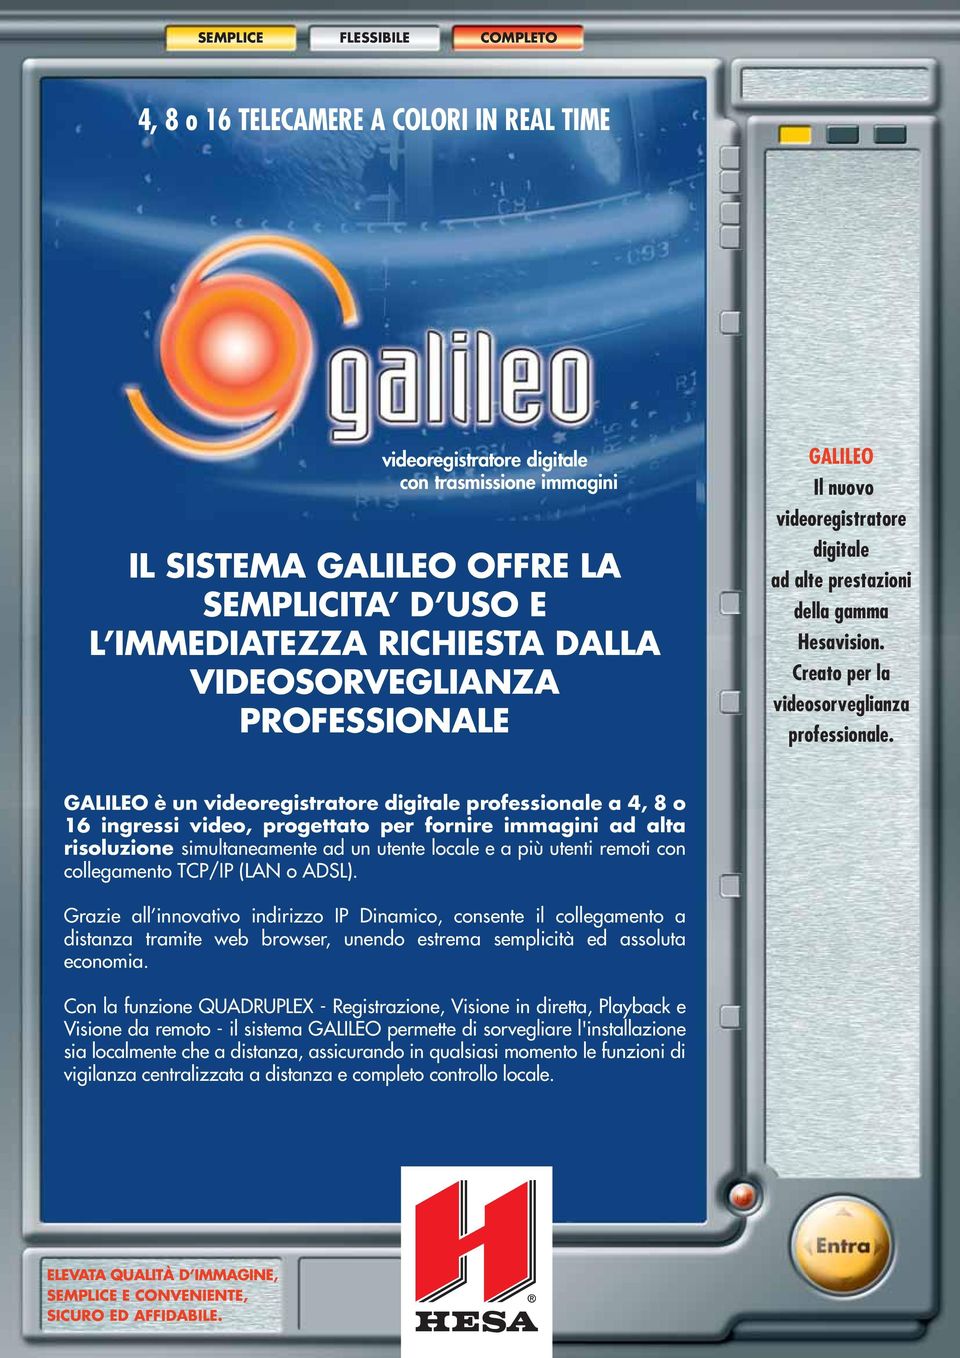 GALILEO è un videoregistratore digitale professionale a 4, 8 o 16 ingressi video, progettato per fornire immagini ad alta risoluzione simultaneamente ad un utente locale e a più utenti remoti con